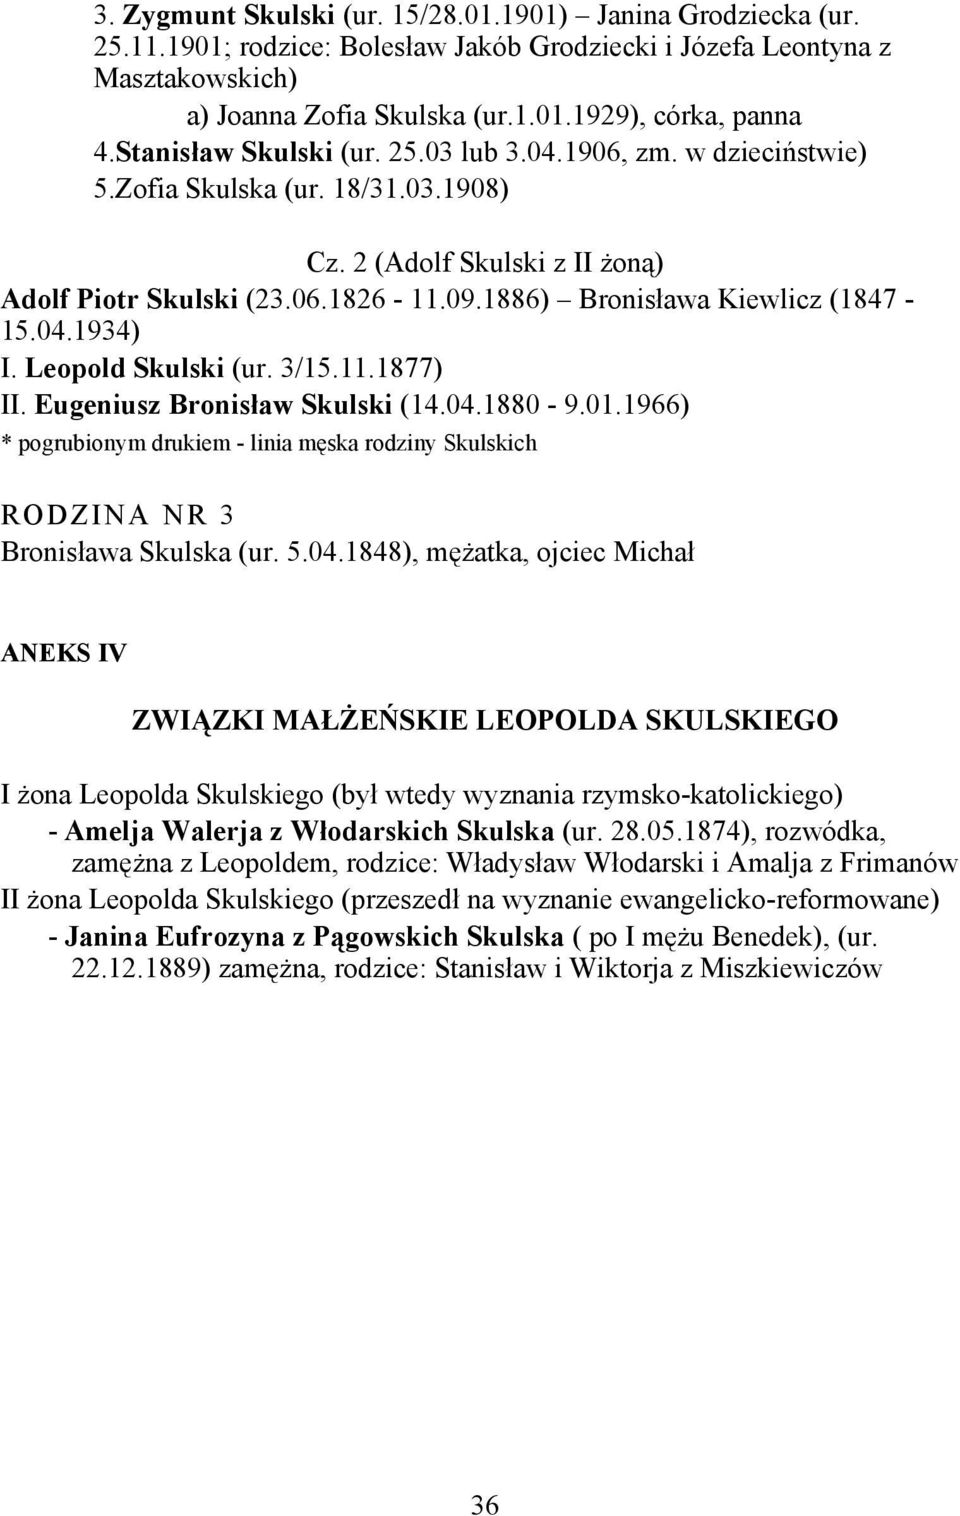 1886) Bronisława Kiewlicz (1847-15.04.1934) I. Leopold Skulski (ur. 3/15.11.1877) II. Eugeniusz Bronisław Skulski (14.04.1880-9.01.